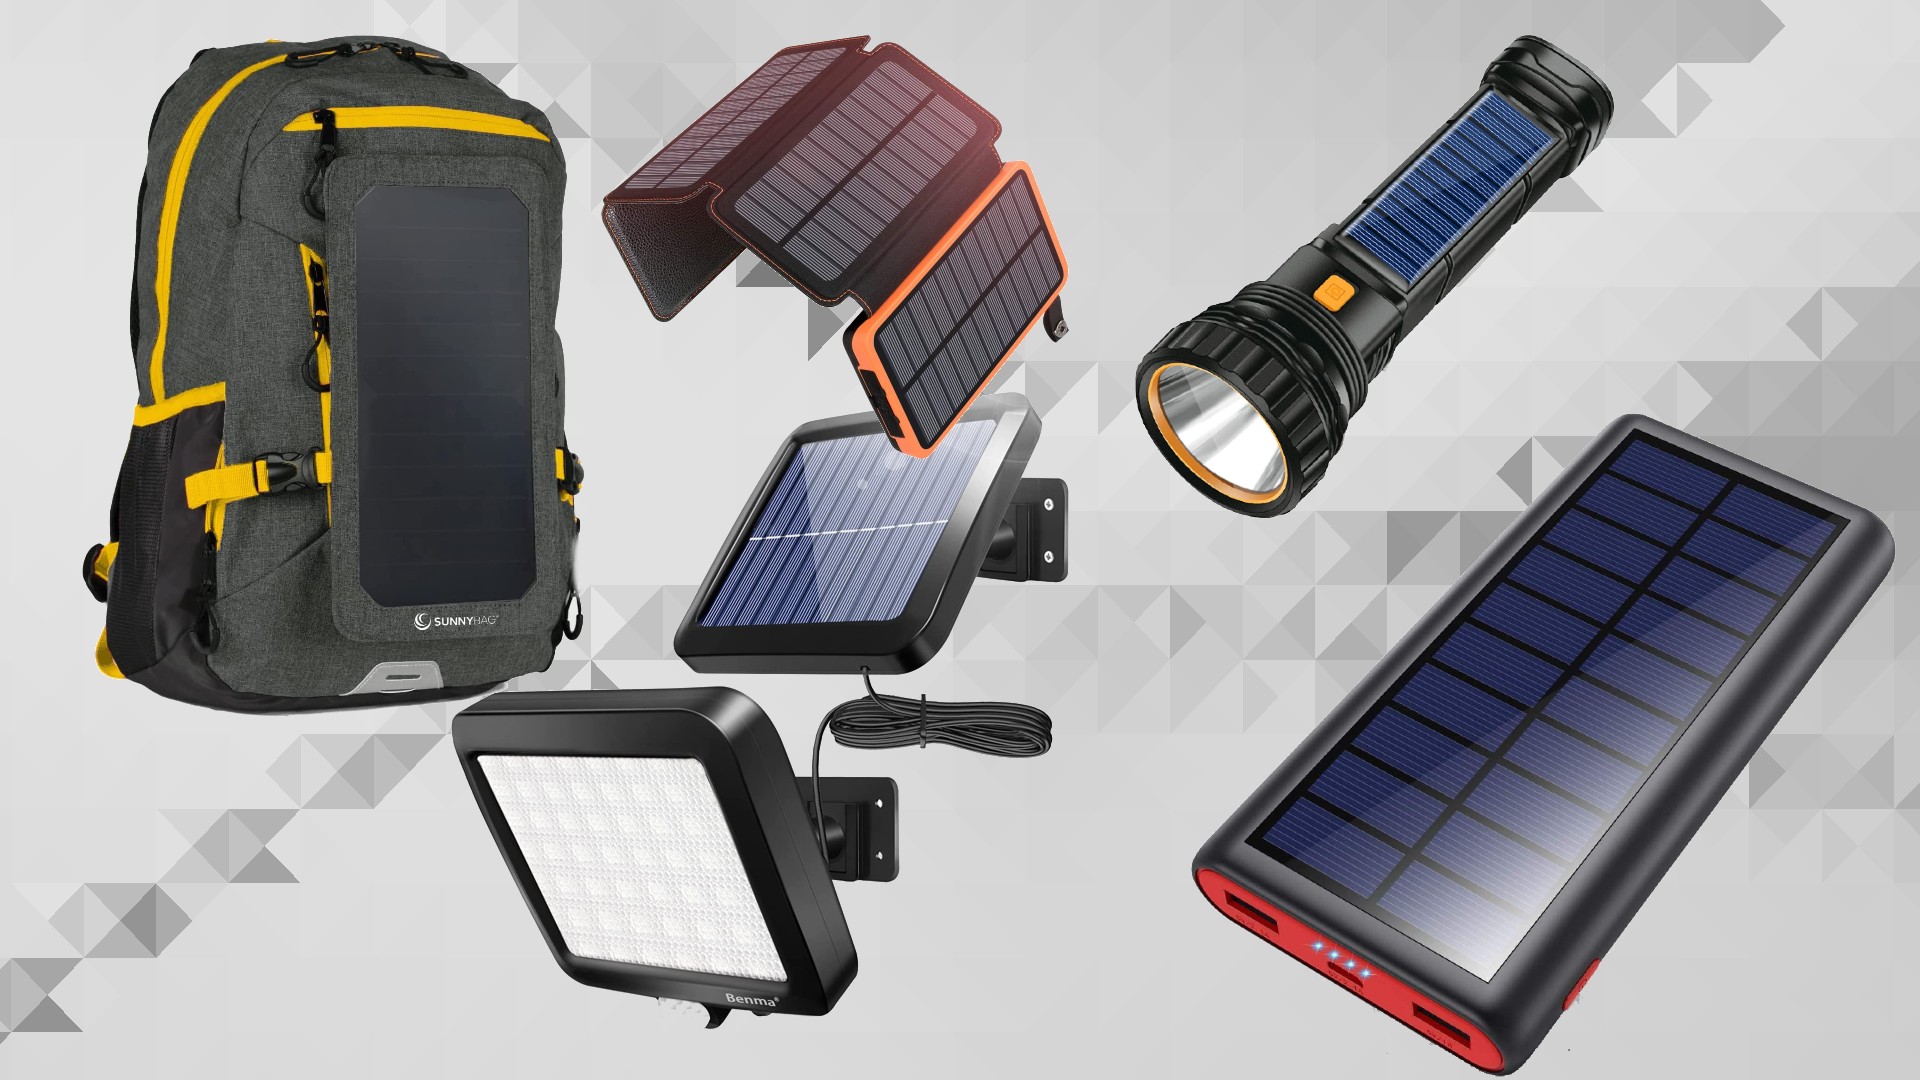 I migliori gadget a energia solare